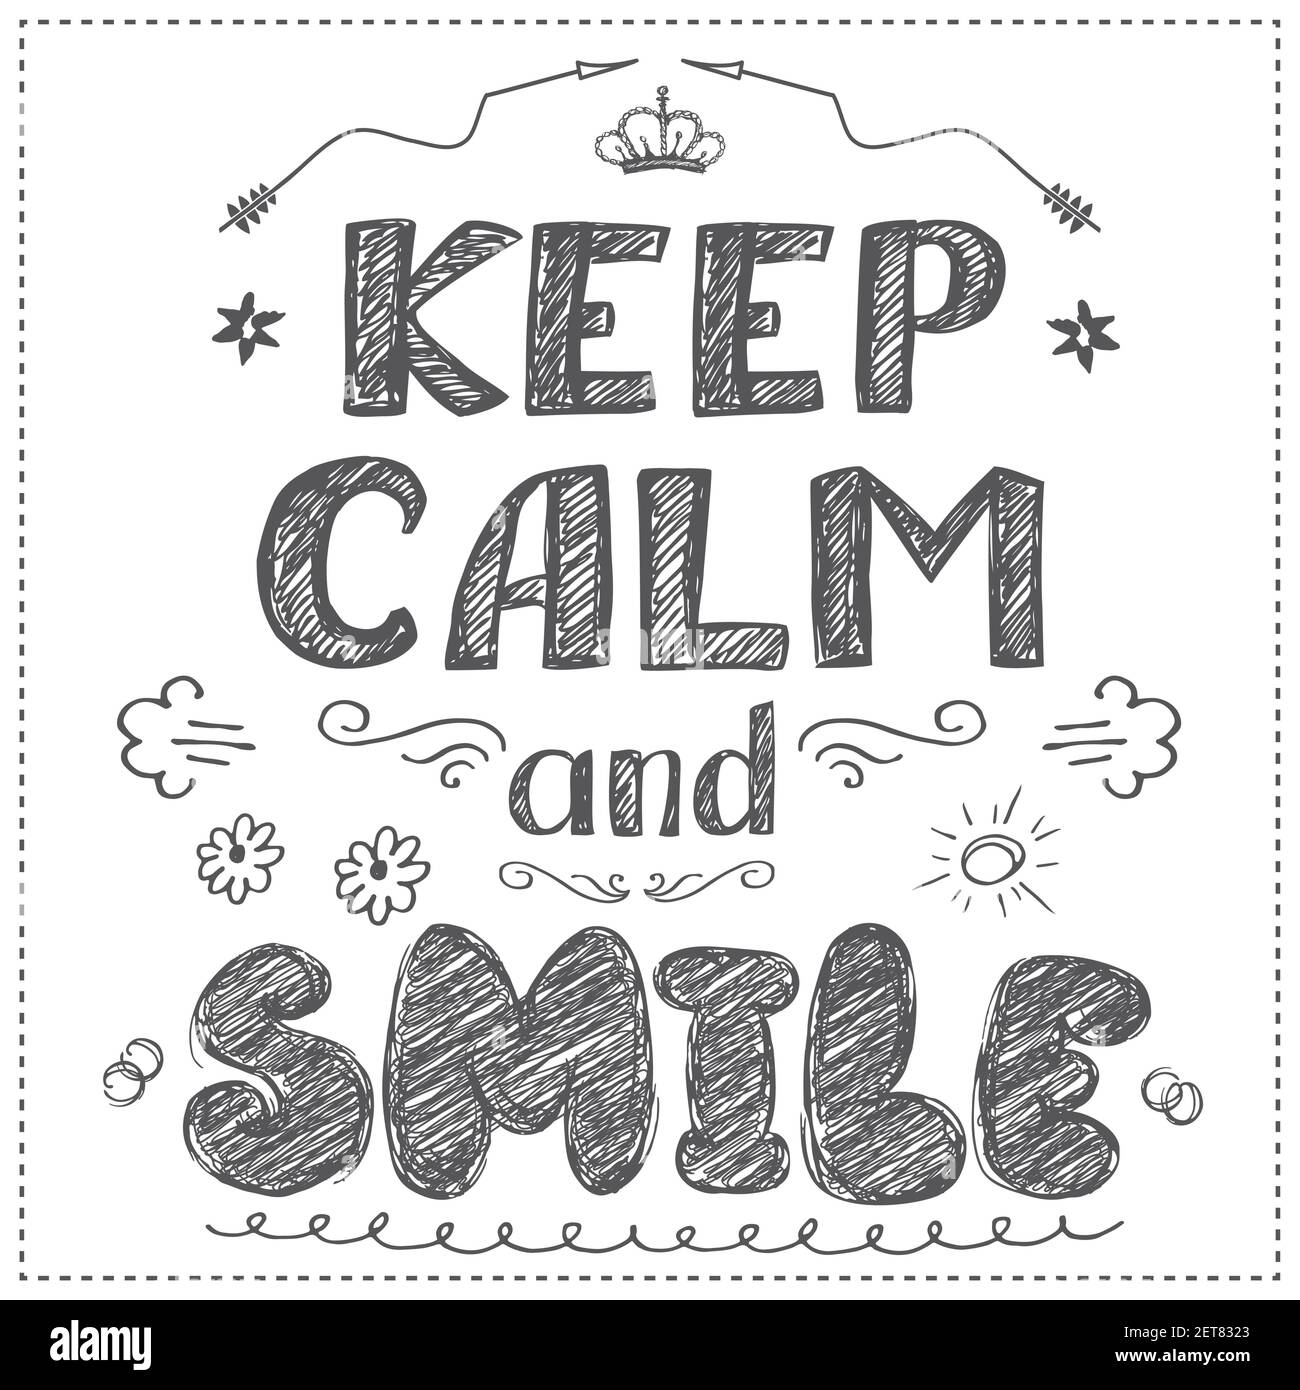 Tarjeta De Motivación Mantener La Calma Y Comenzar El Día Con La Sonrisa Gracioso Dibujo A 8723